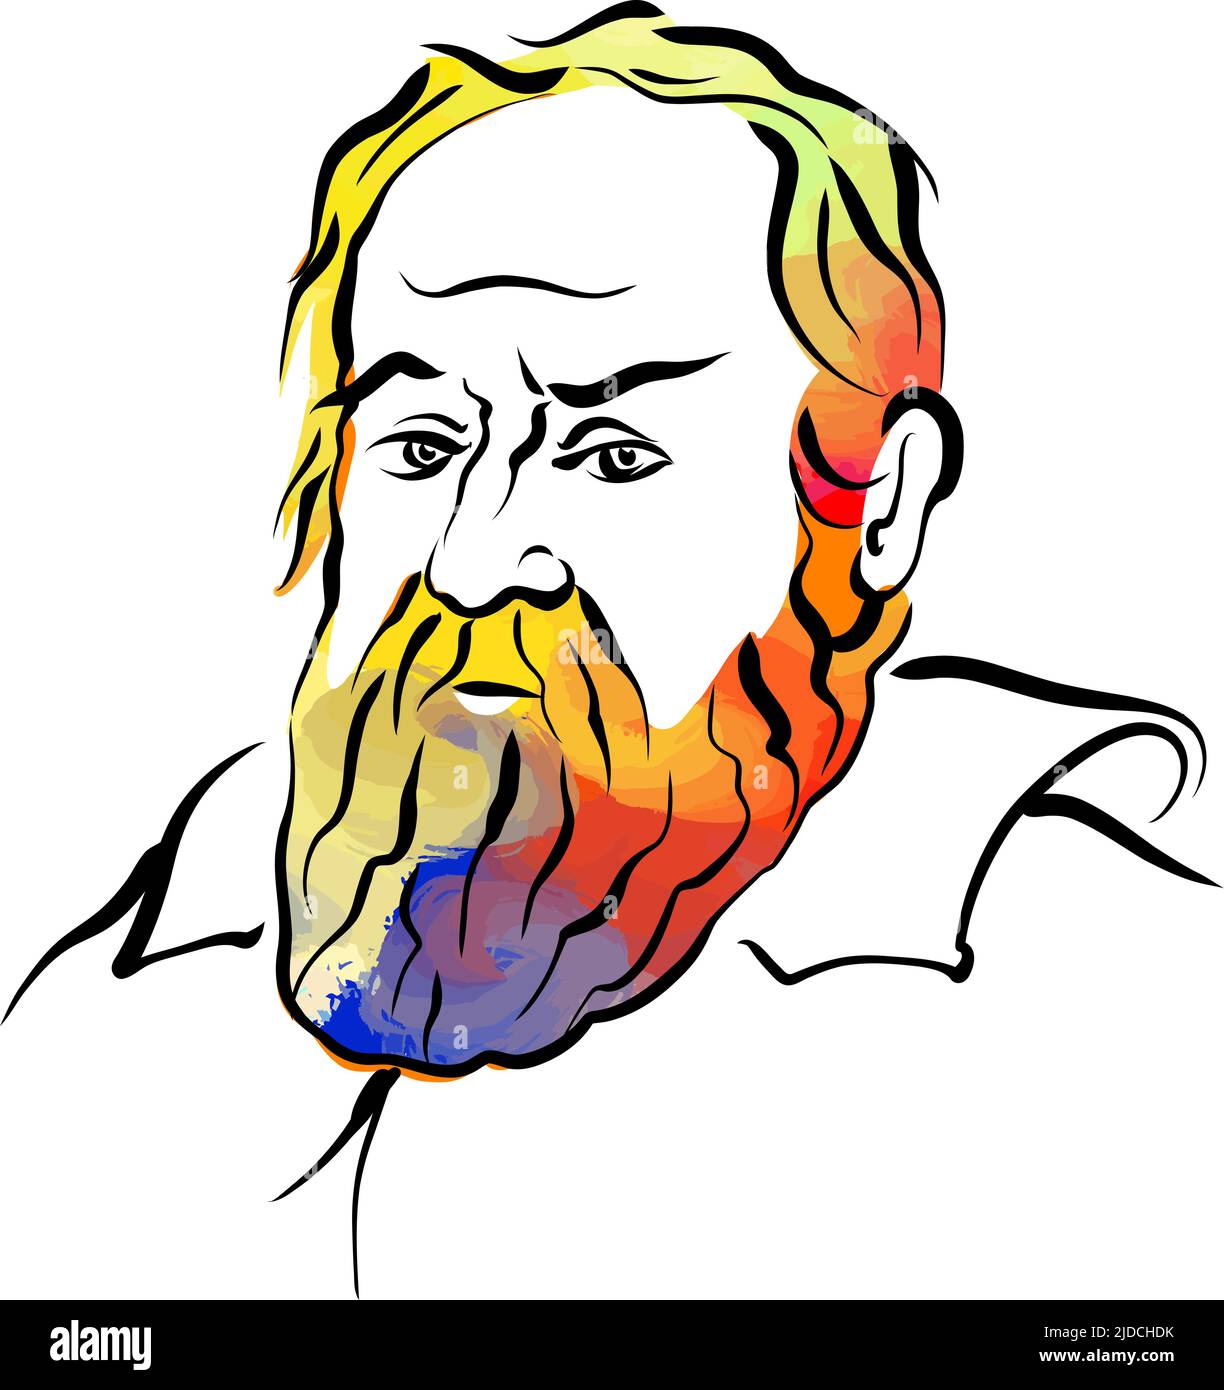 Galileo Galilei disegno vettoriale colorato dei capelli. Schizzo del contorno disegnato a mano. Disegno da utilizzare su qualsiasi progetto di marketing e per la rivendita come stampa. Illustrazione Vettoriale